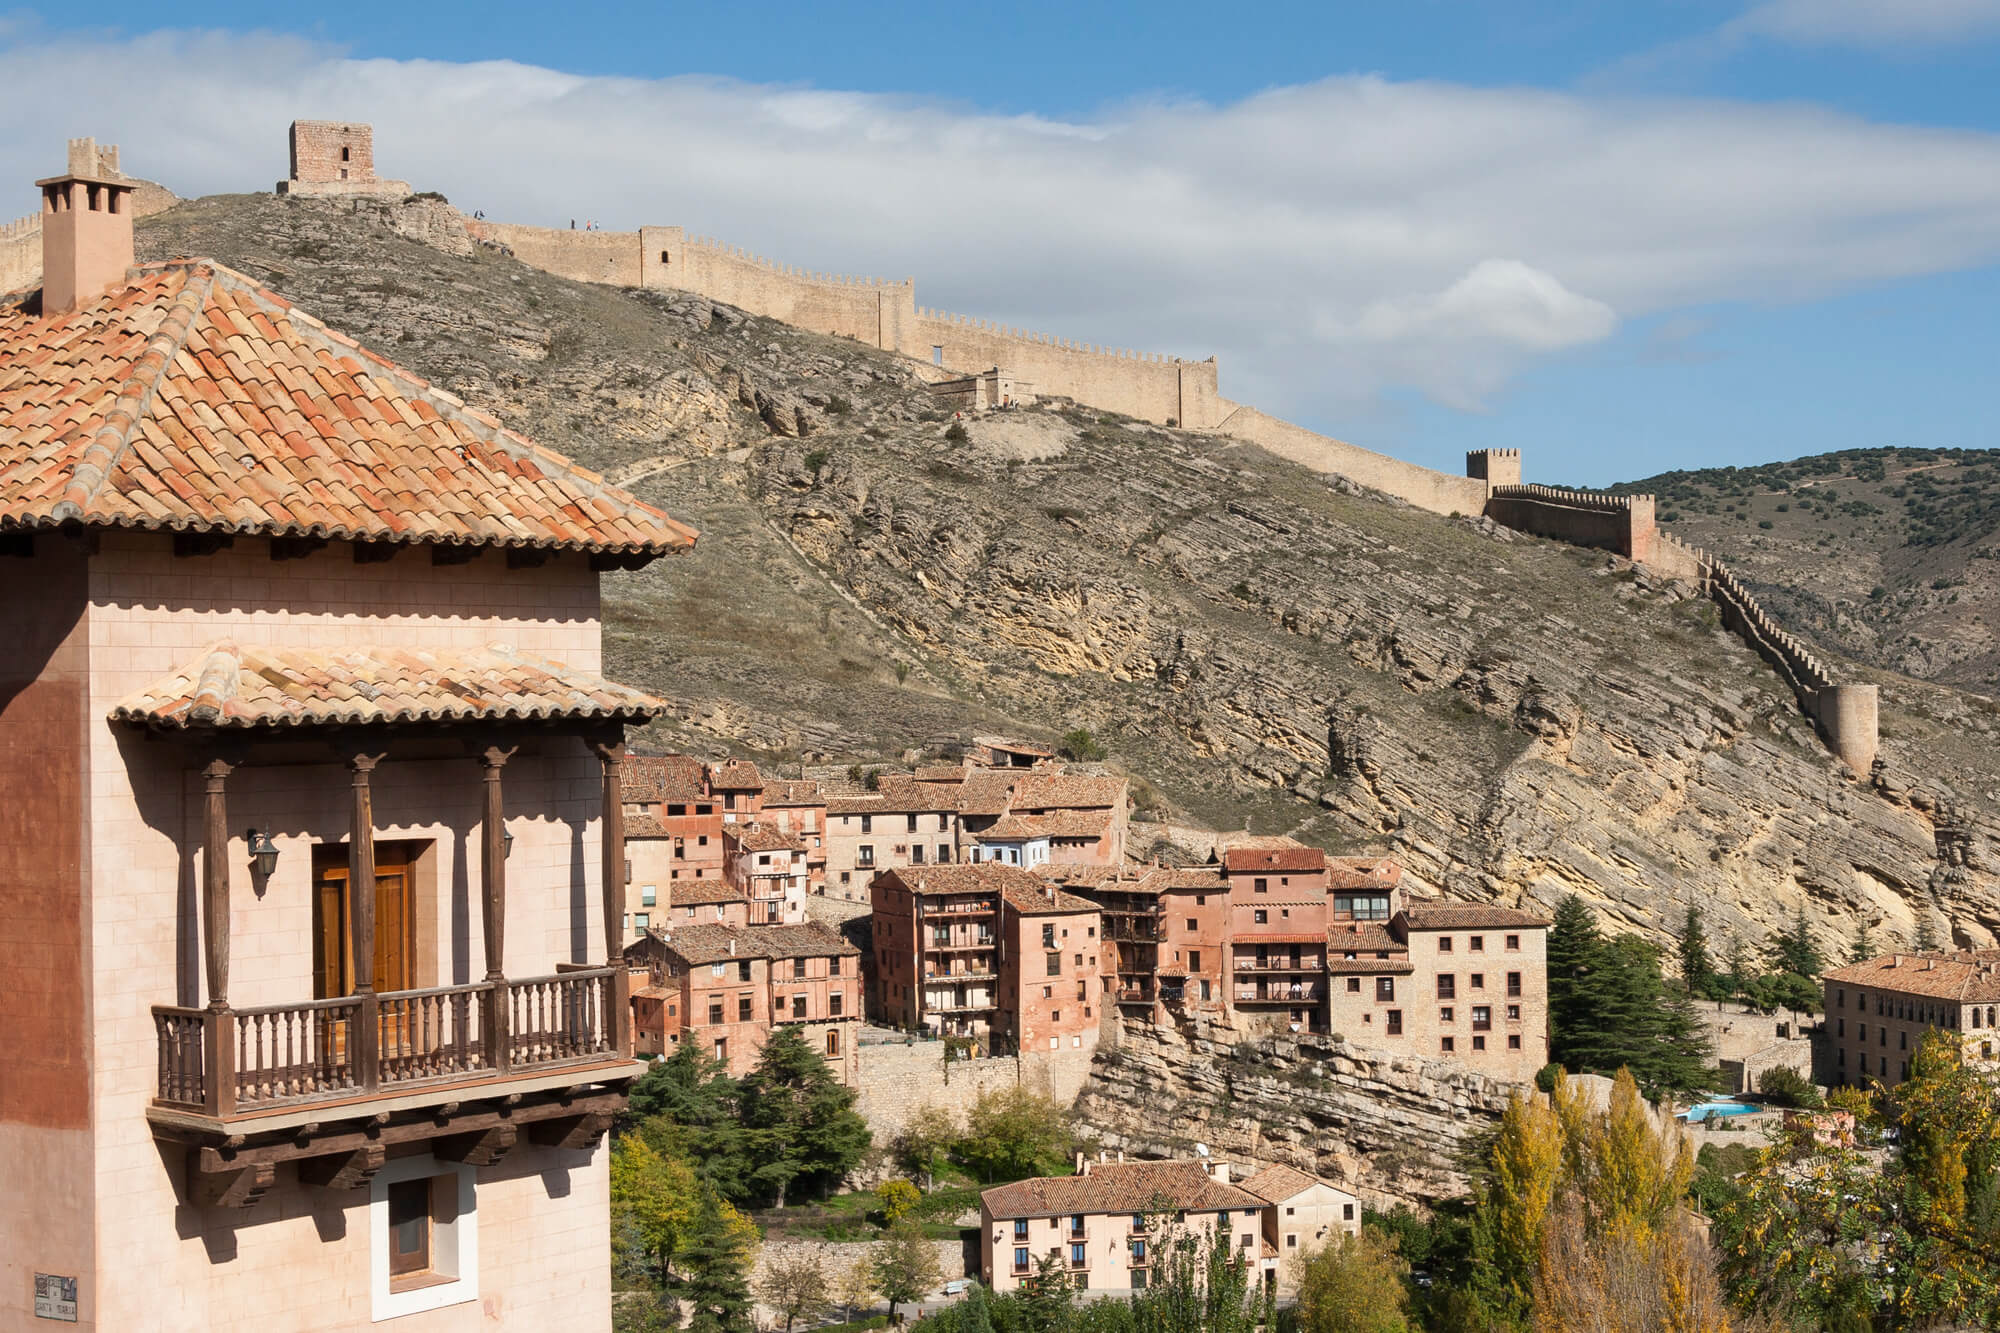 RDC pueblo  1 - Pueblo de Albarracín - 1